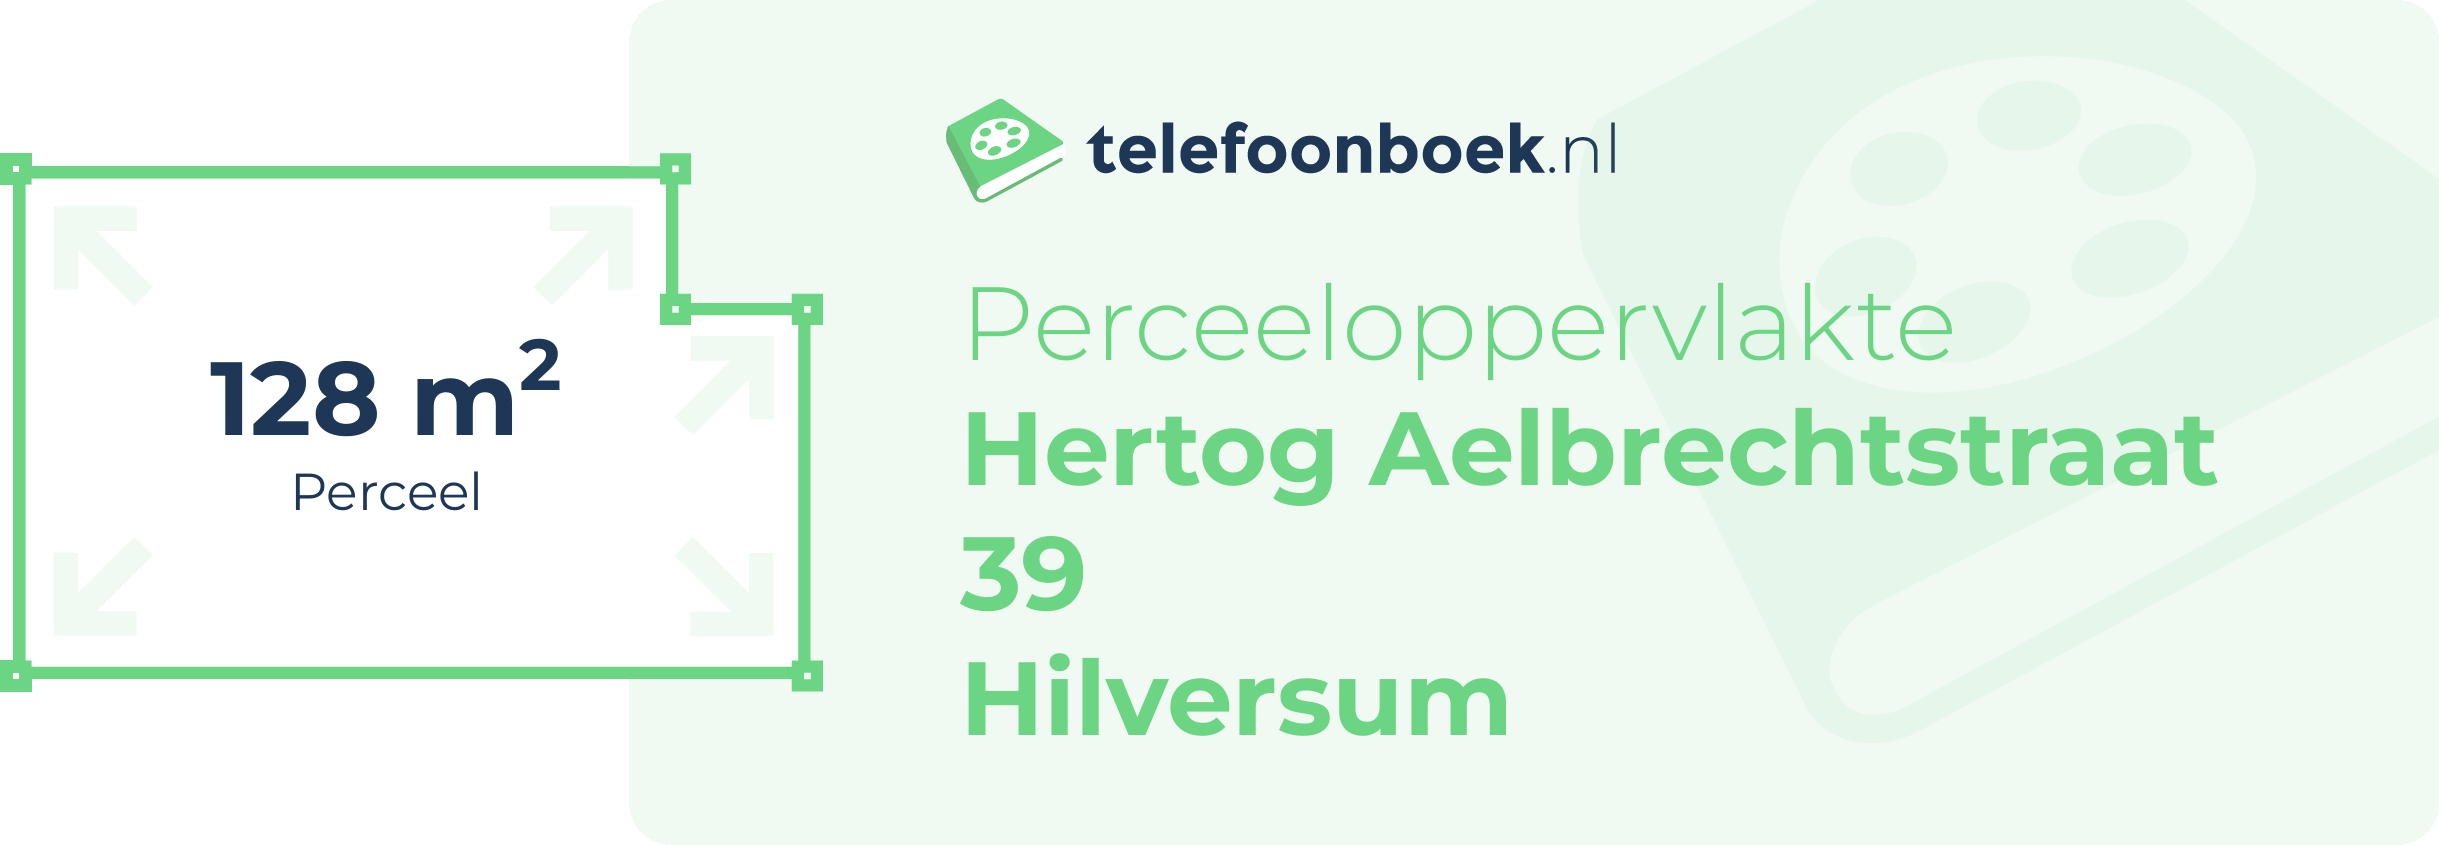 Perceeloppervlakte Hertog Aelbrechtstraat 39 Hilversum